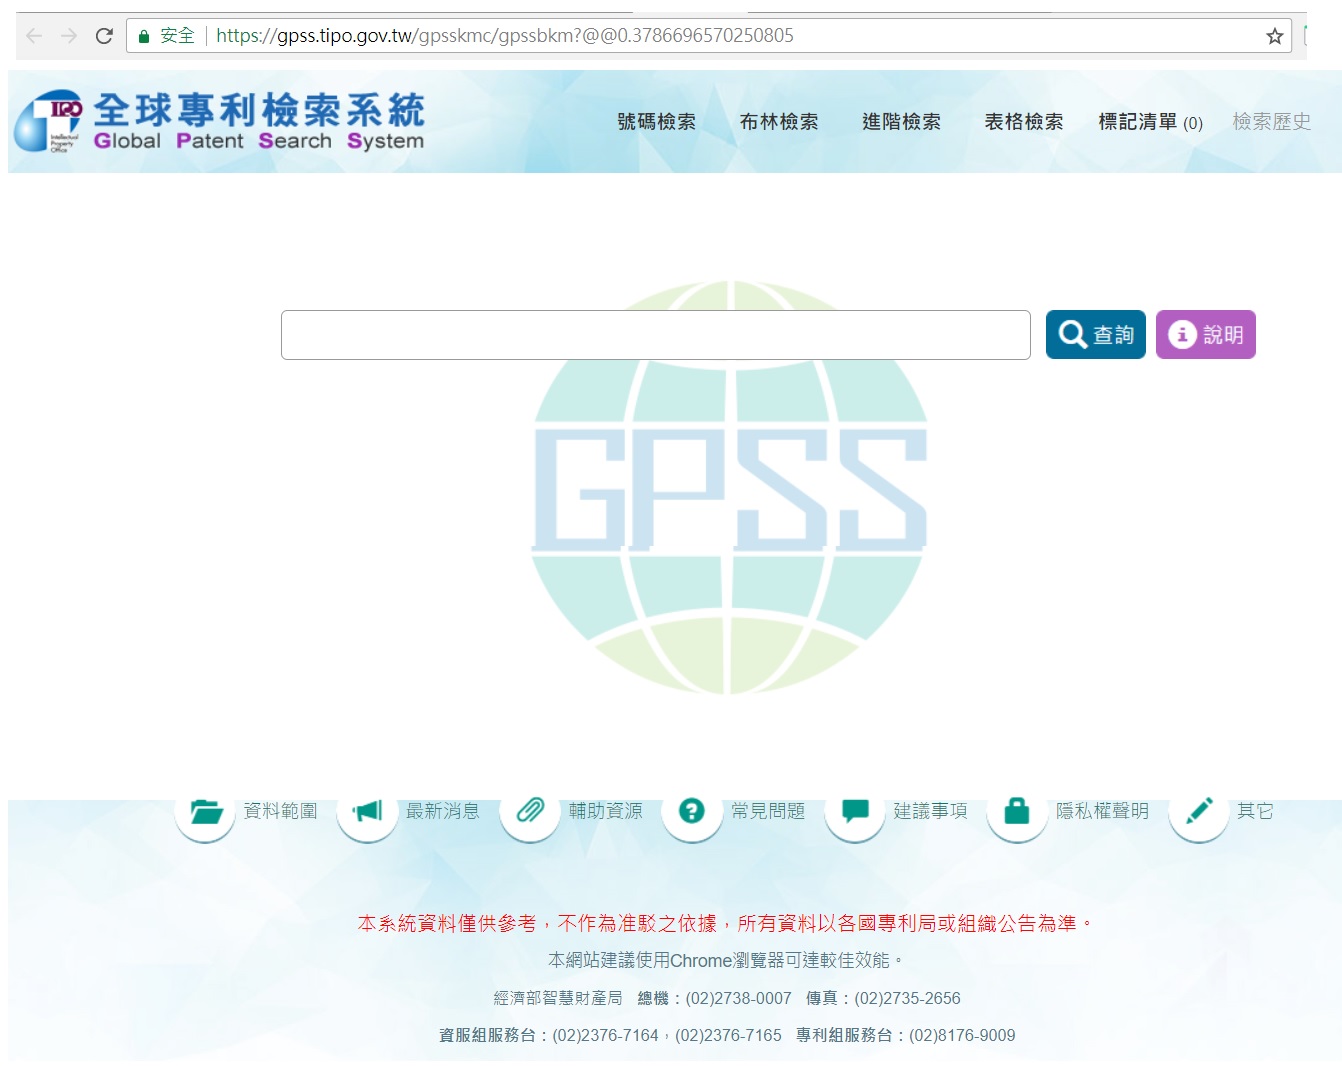 台湾智能财产局「产业专利知识平台系统」提供五大专利局与台湾最新发明专利公开公报之开放资料